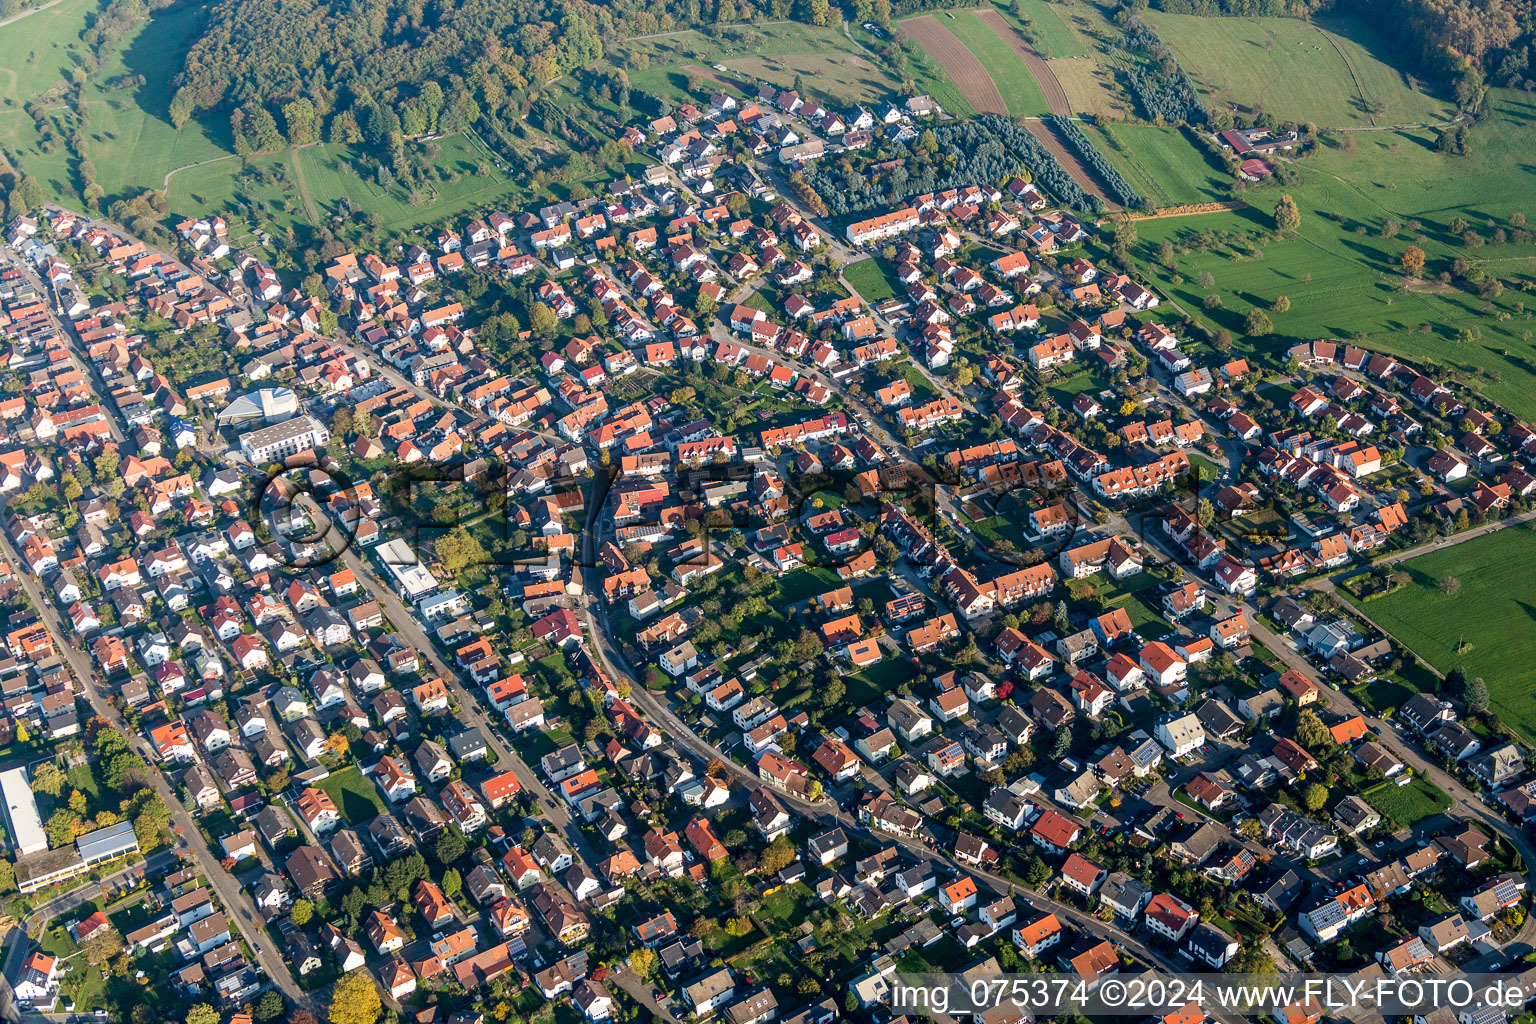 Luftbild von Ortsansicht der Straßen und Häuser der Wohngebiete in Schöllbronn in Ettlingen im Bundesland Baden-Württemberg, Deutschland